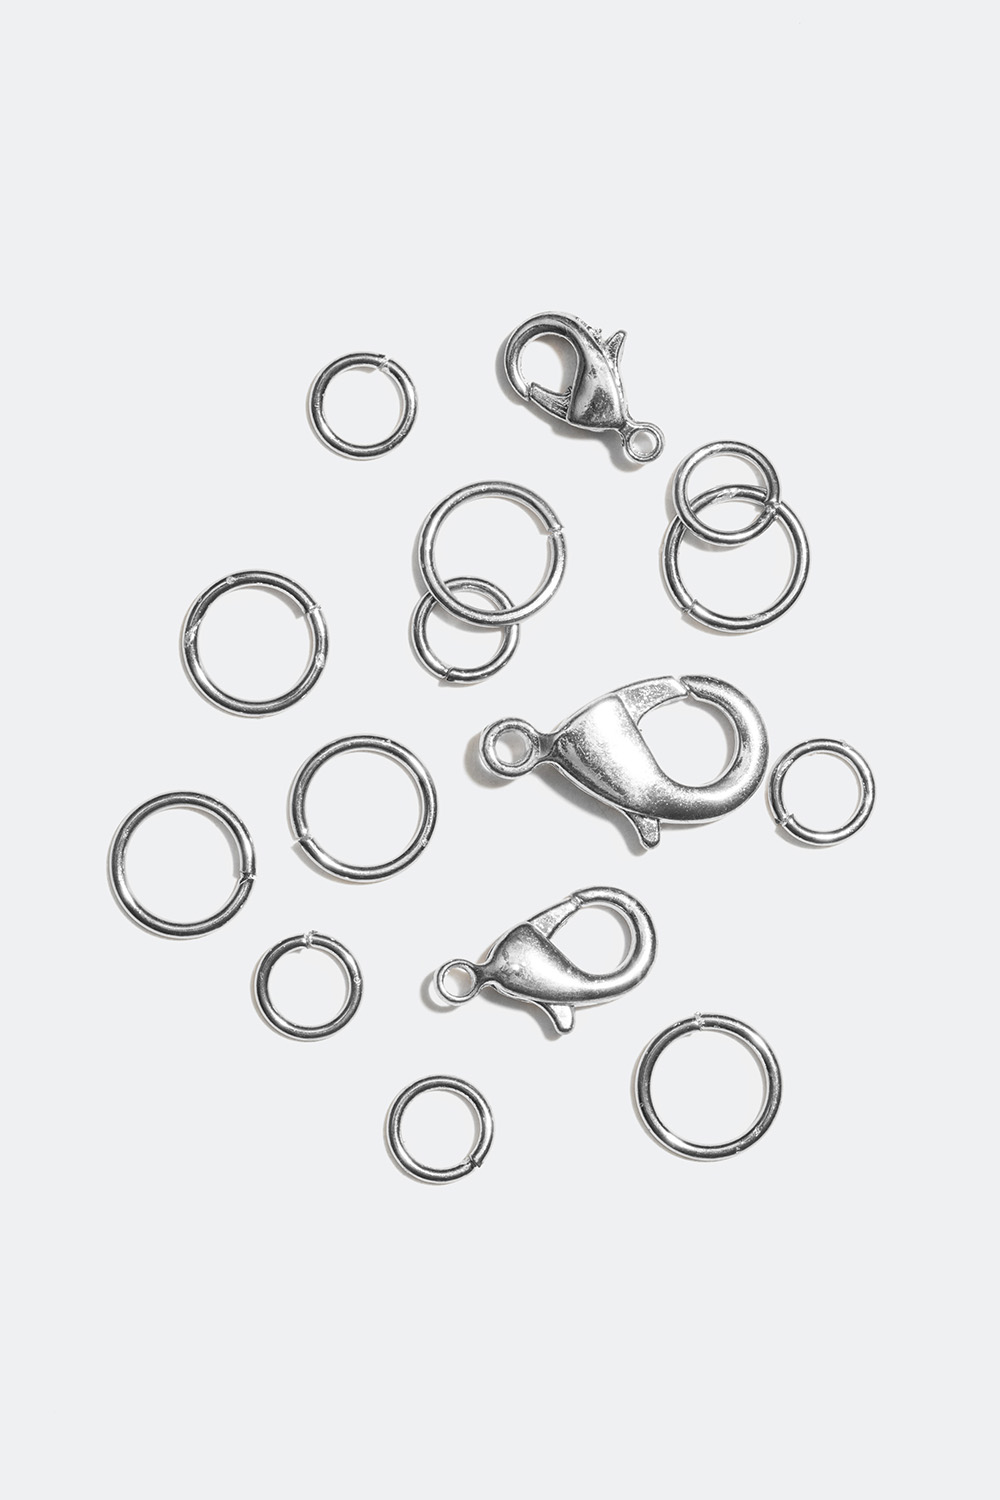 Halskæde låse i forskellige størrelser, metal. i gruppen Smykker / Reservedele hos Glitter (212573)